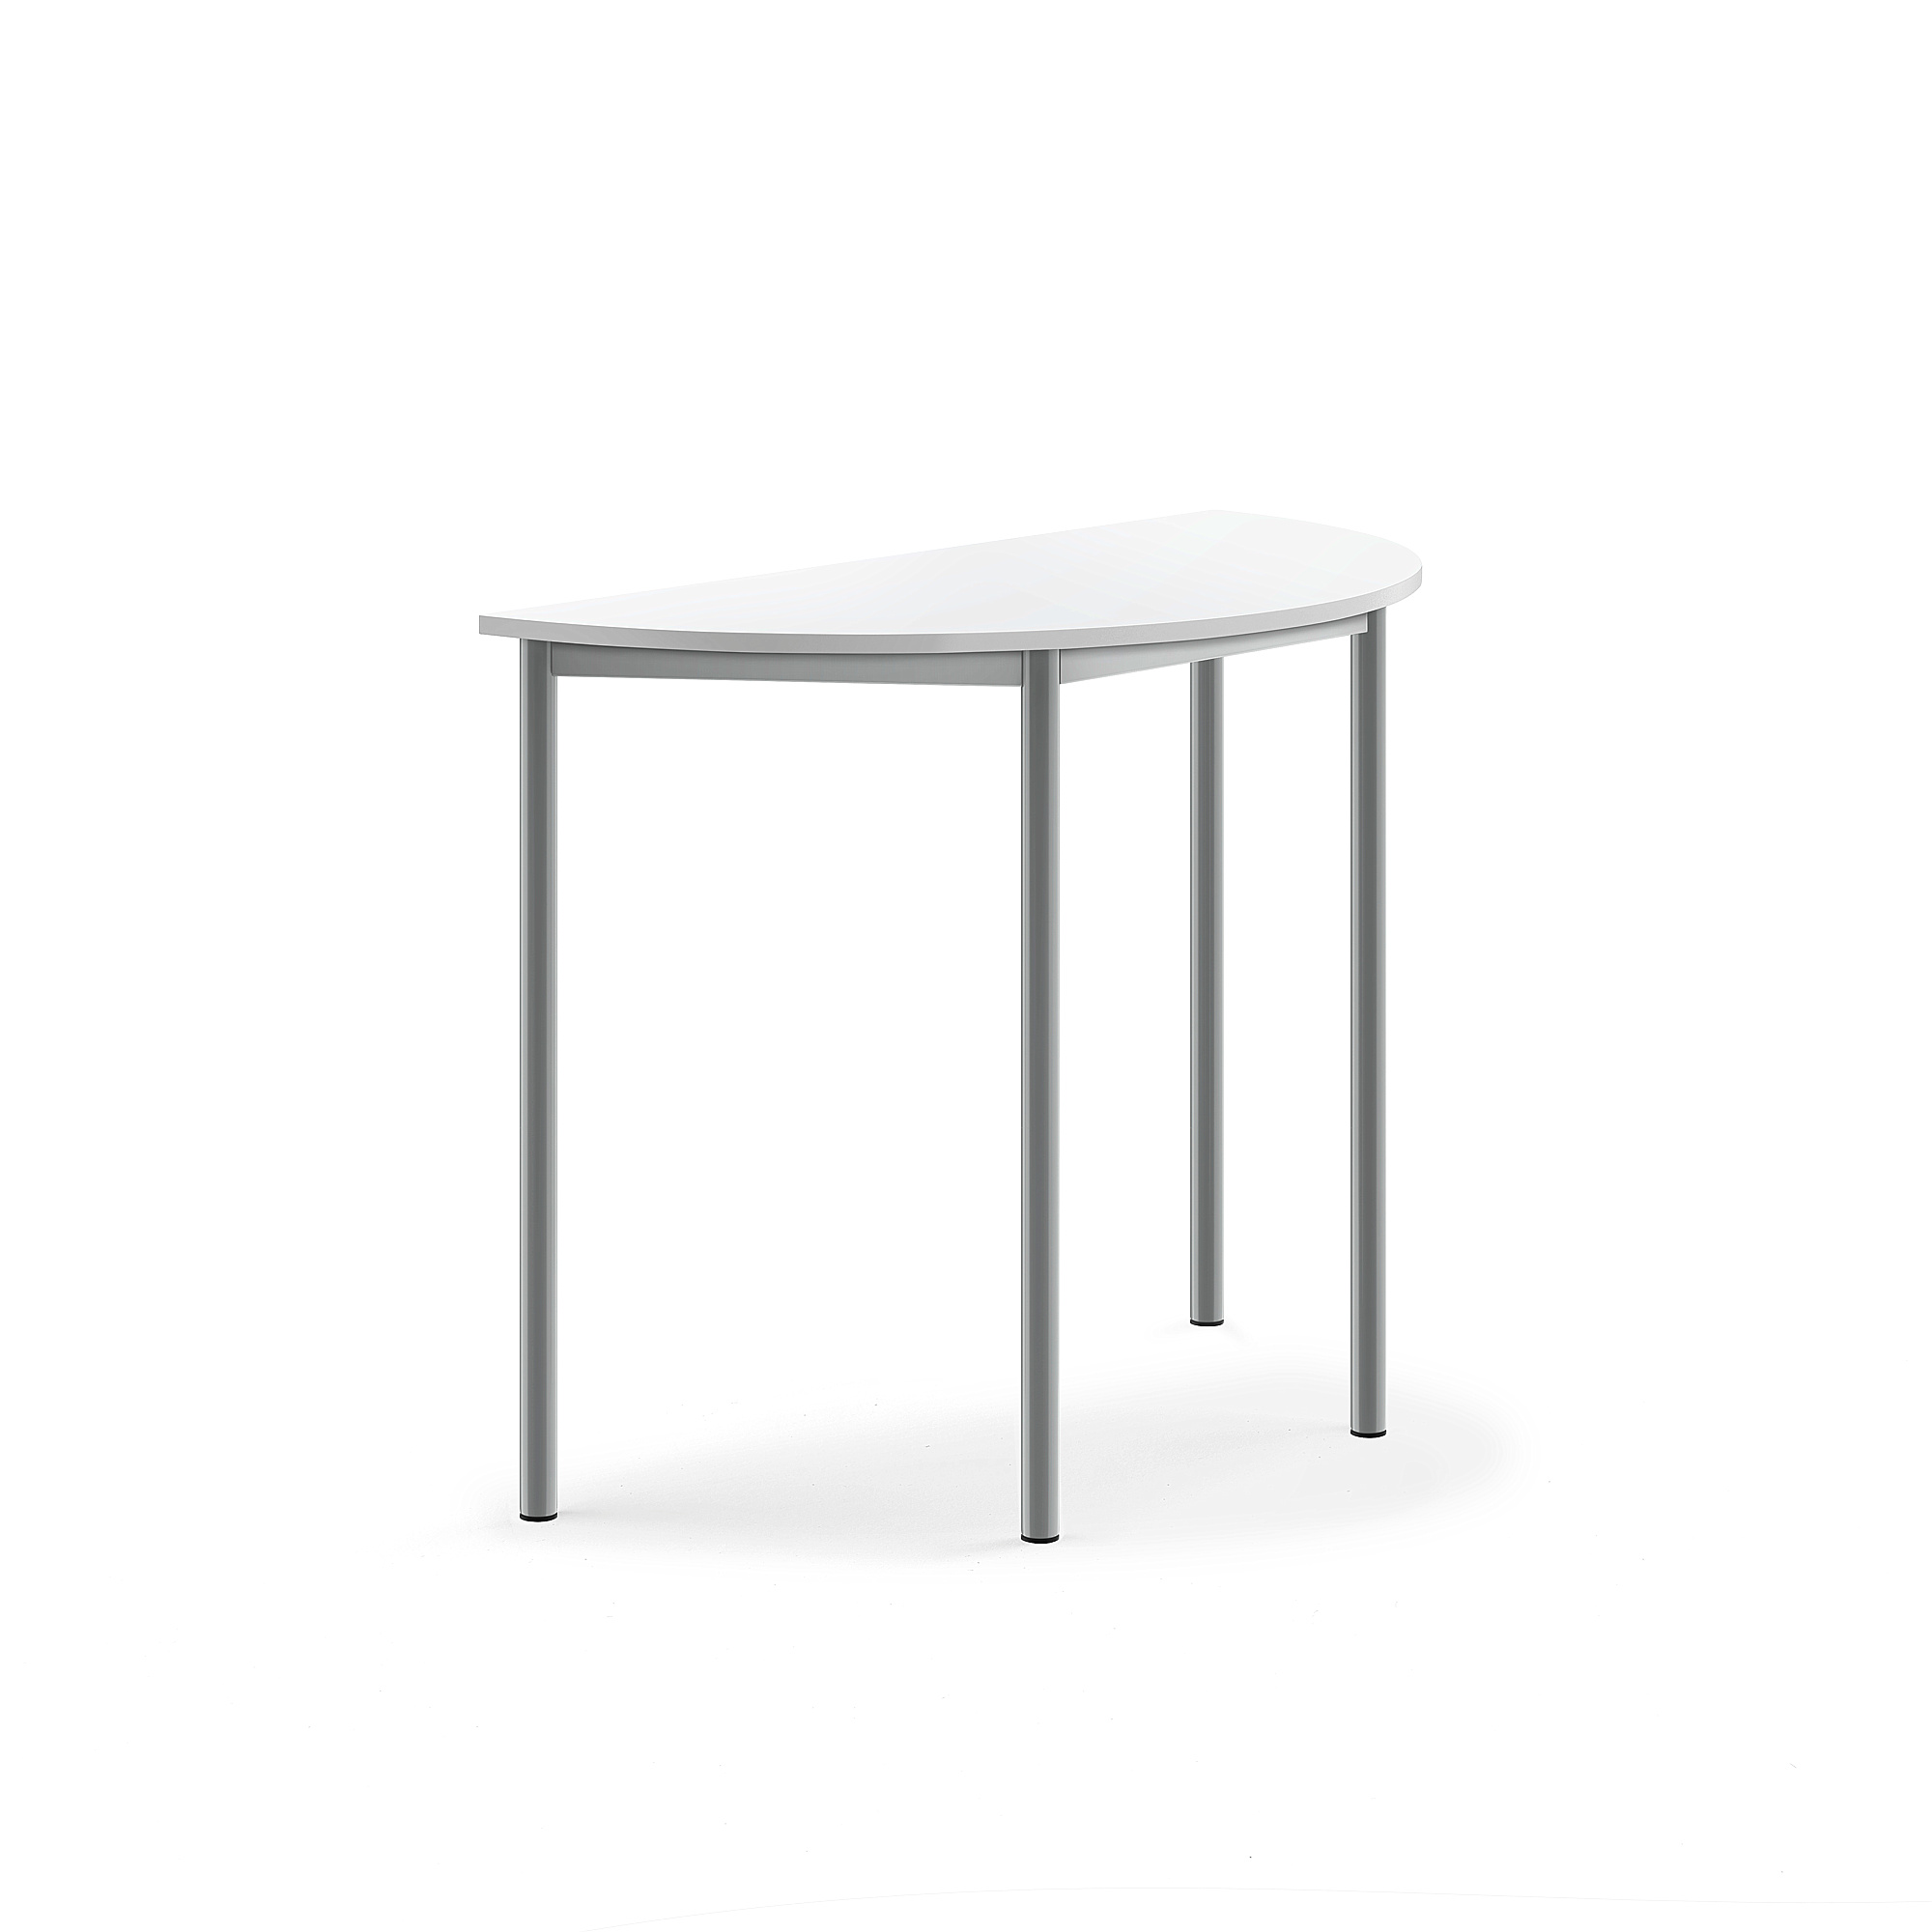 Stůl SONITUS, půlkruh, 1200x600x900 mm, stříbrné nohy, HPL deska tlumící hluk, bílá